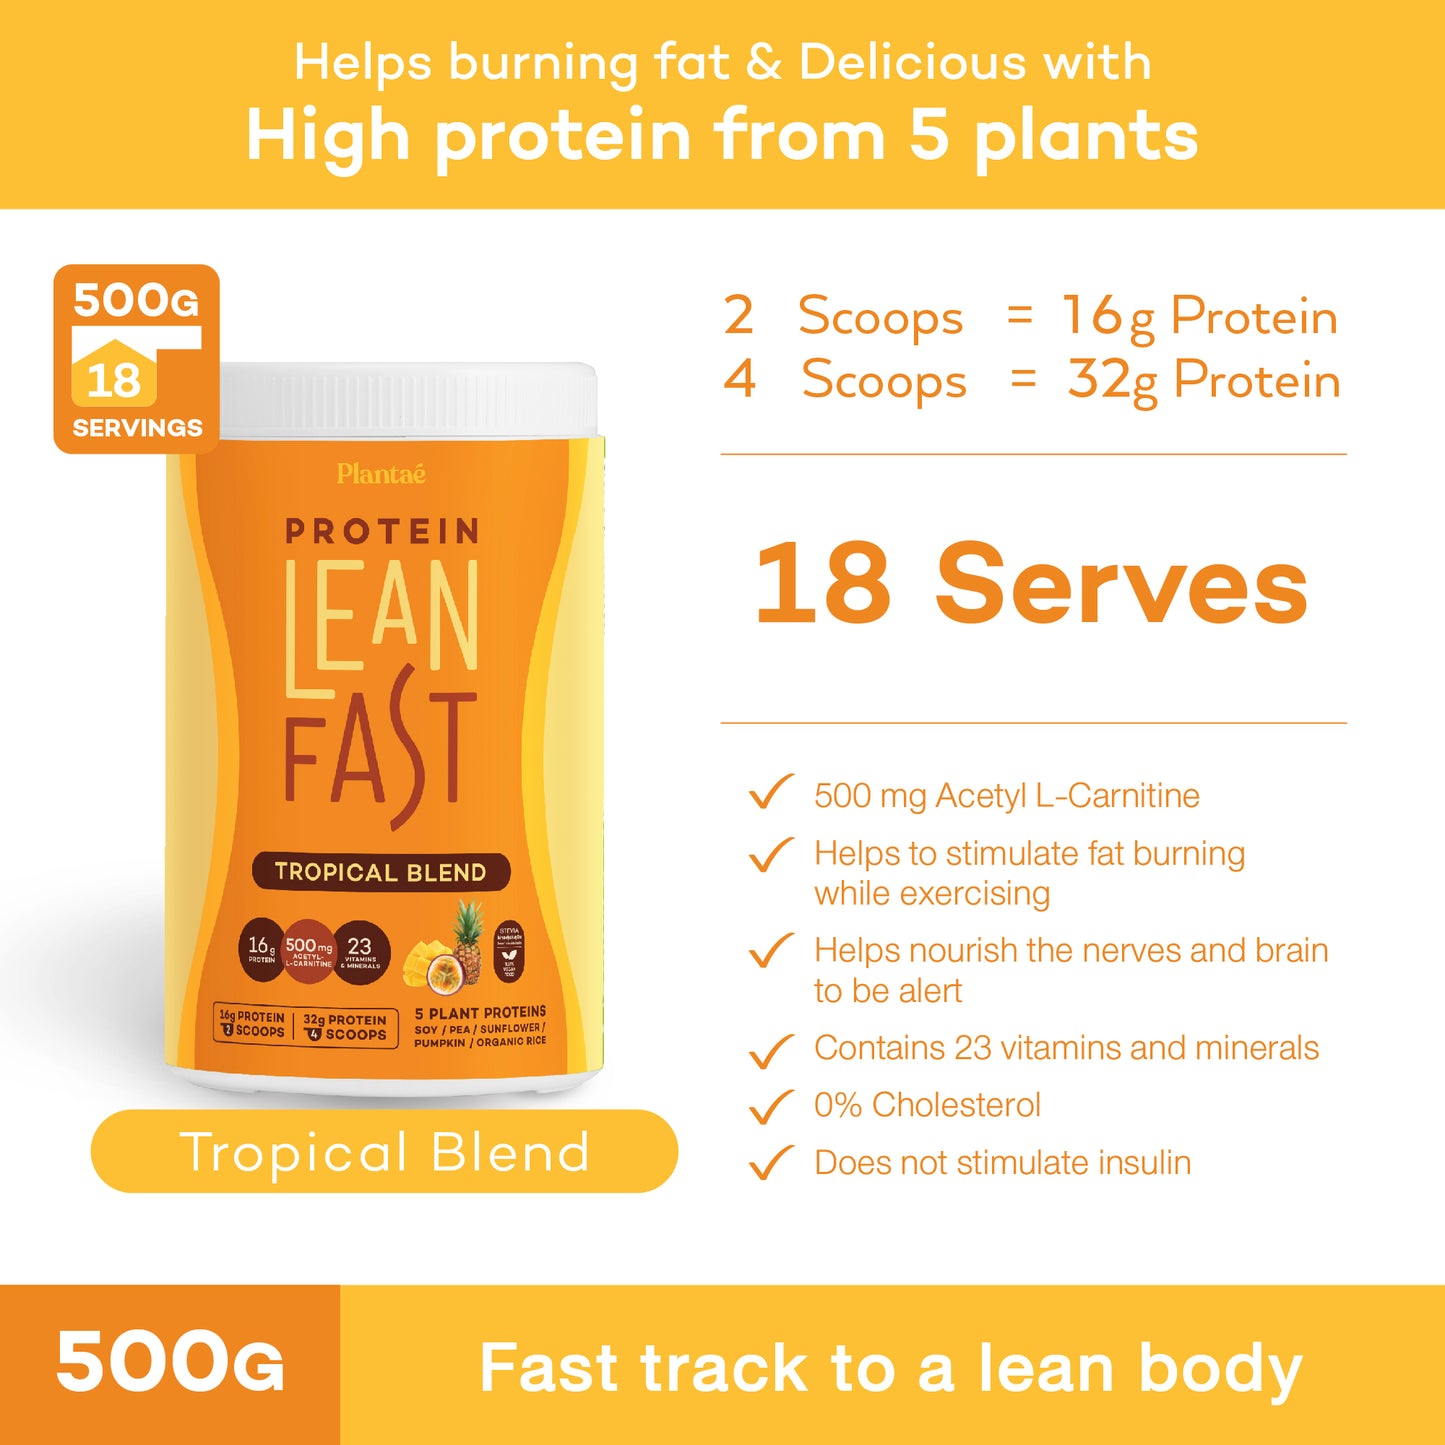 Plantae Lean Fast Fat Burning Protein Powder 500G